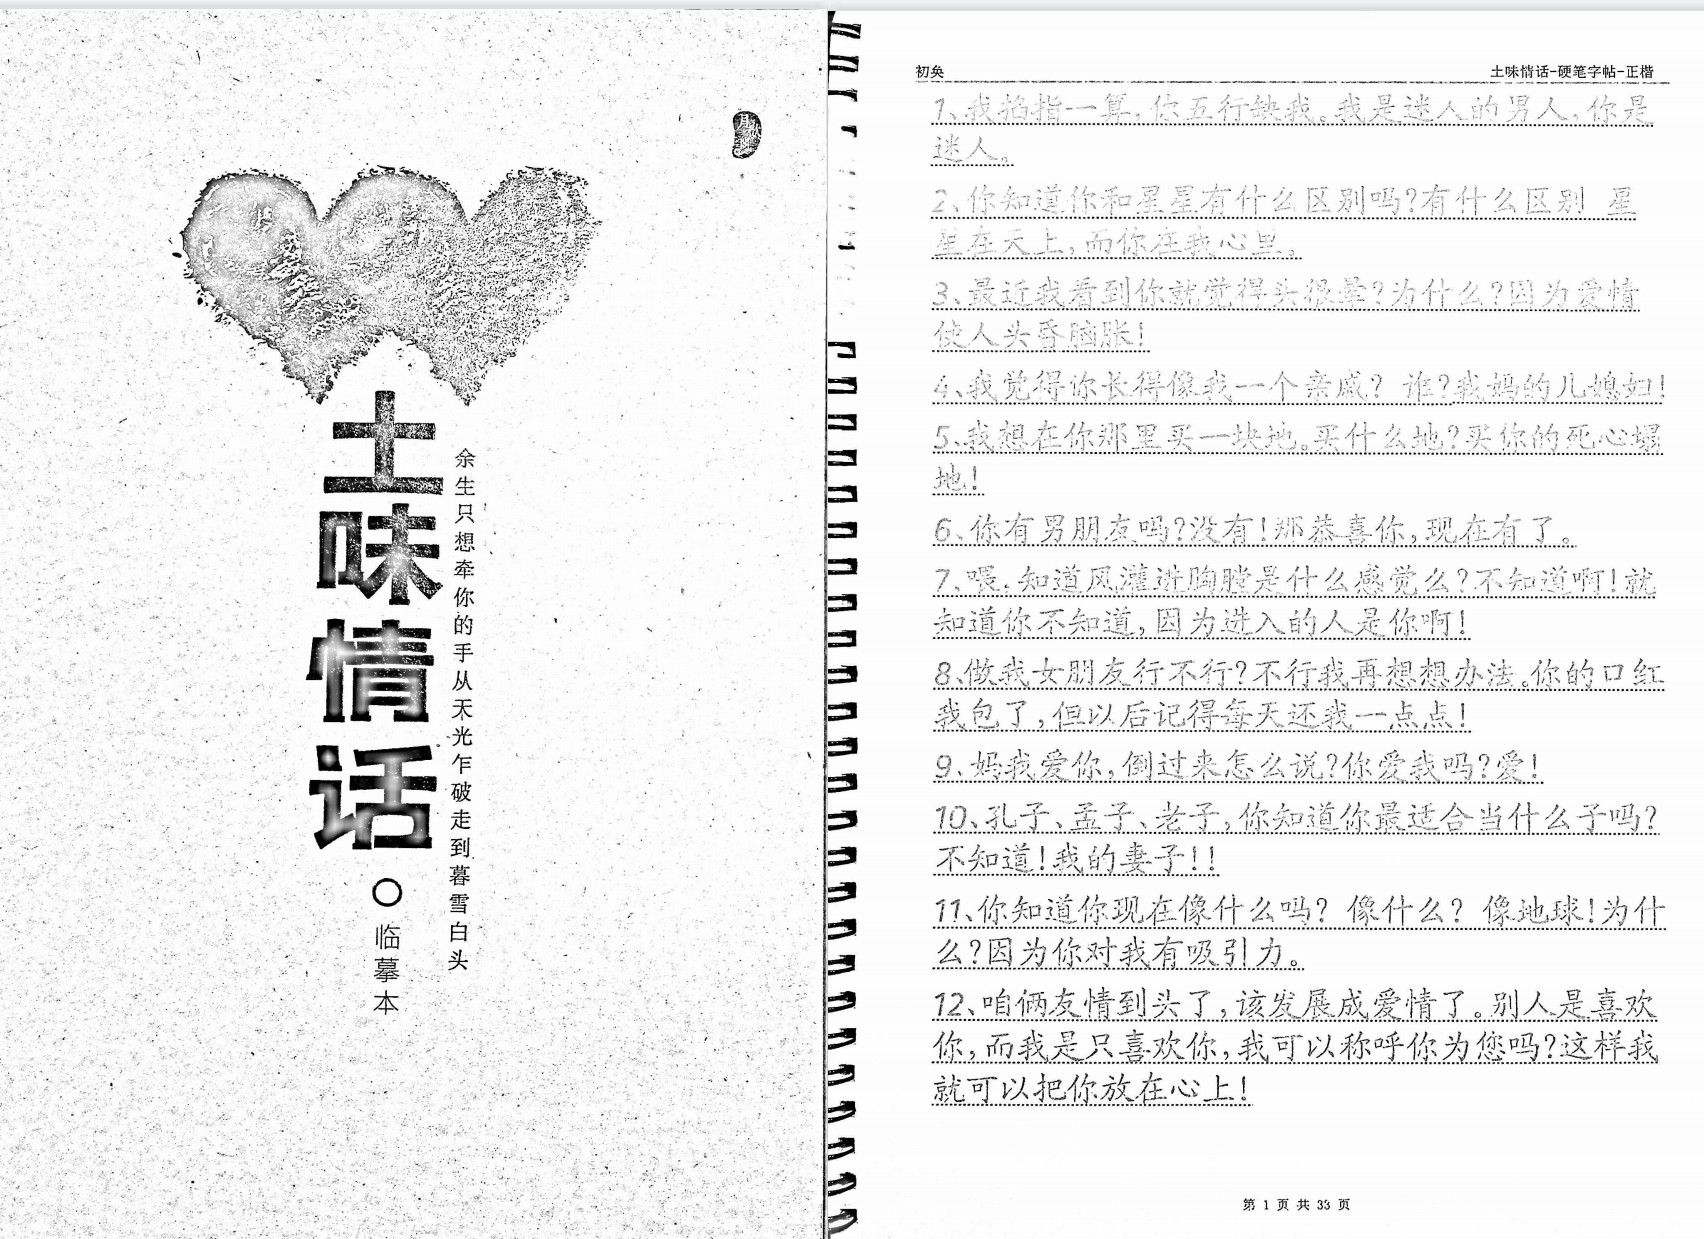 《土味情话》[无水印].pdf「百度网盘下载」PDF 电子书插图